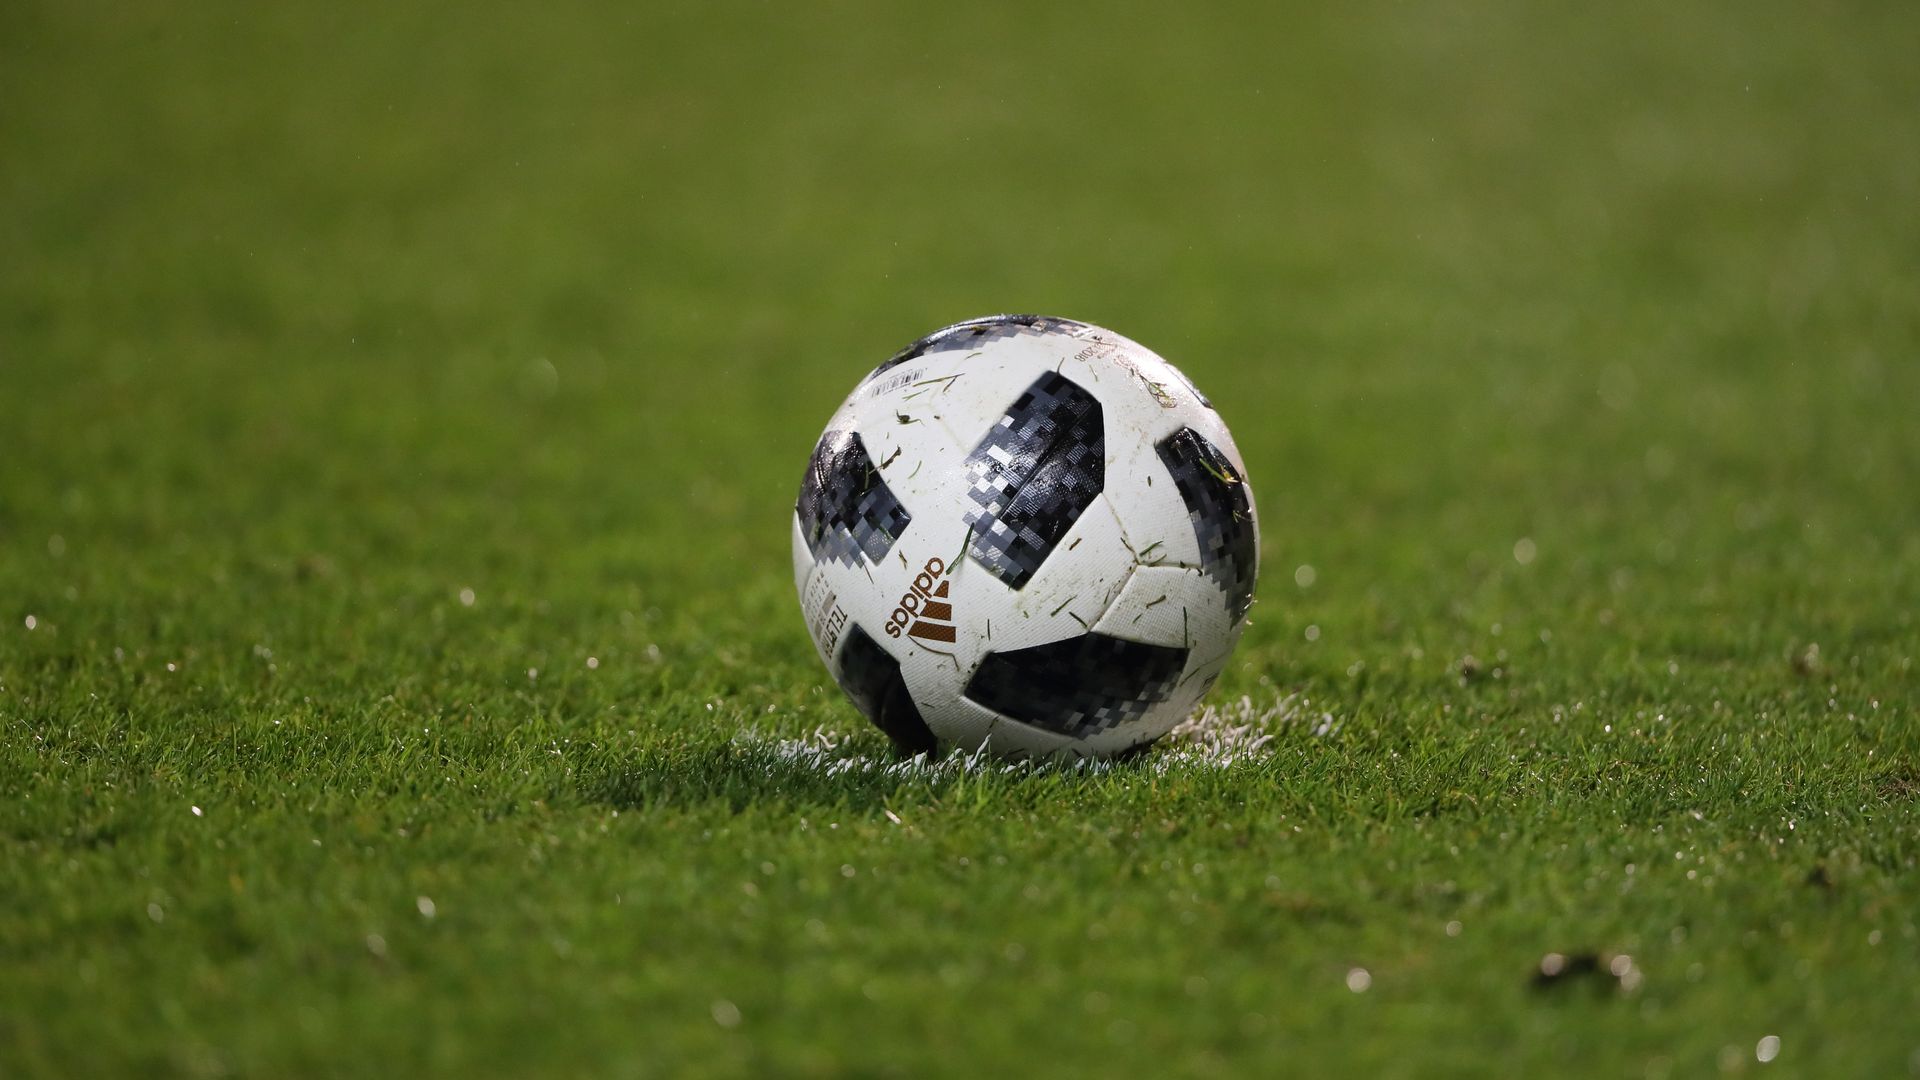 An official FIFA soccer ball